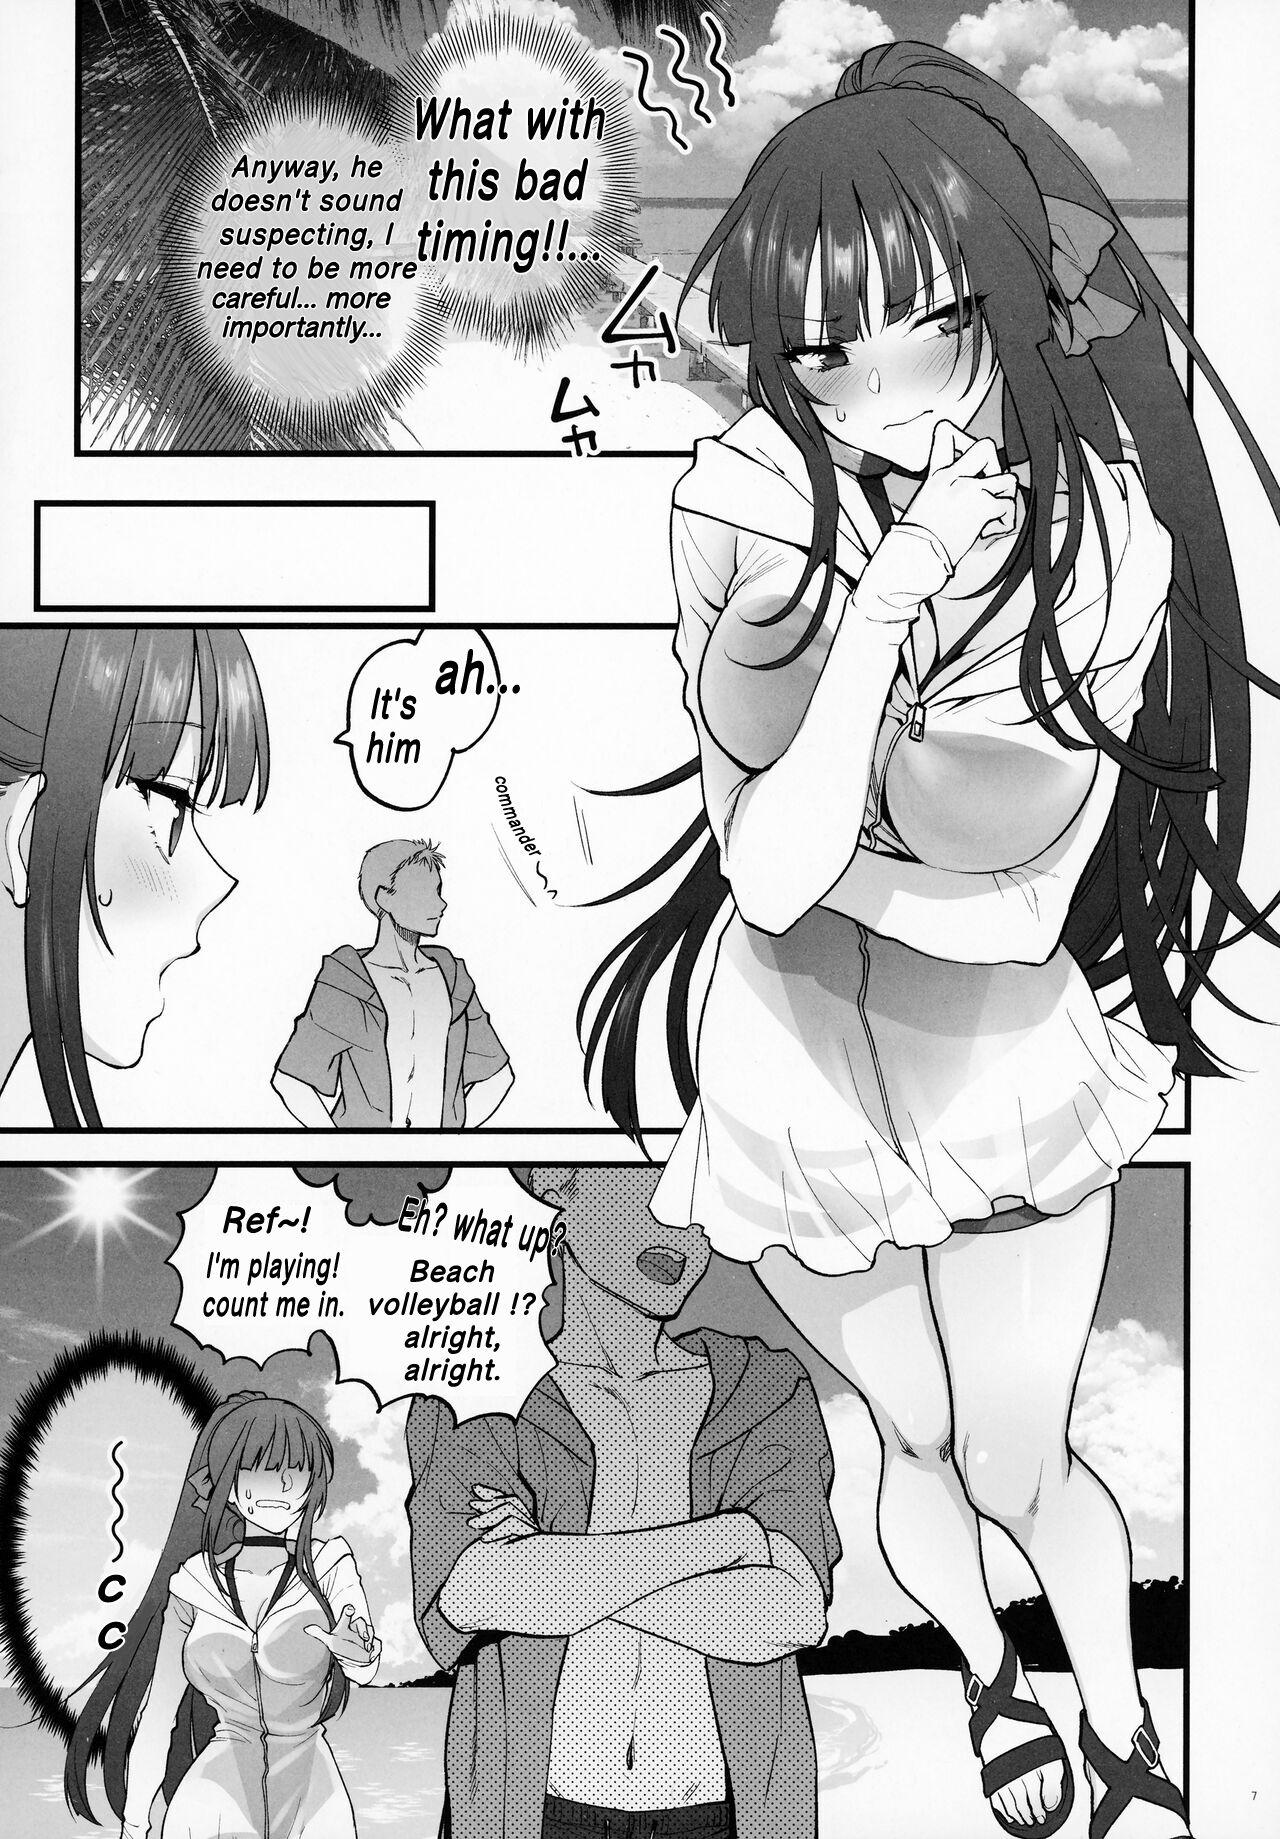 Bikini MIzugi Miseni Kita Dakedashi!! - Girls frontline Peeing - Page 6